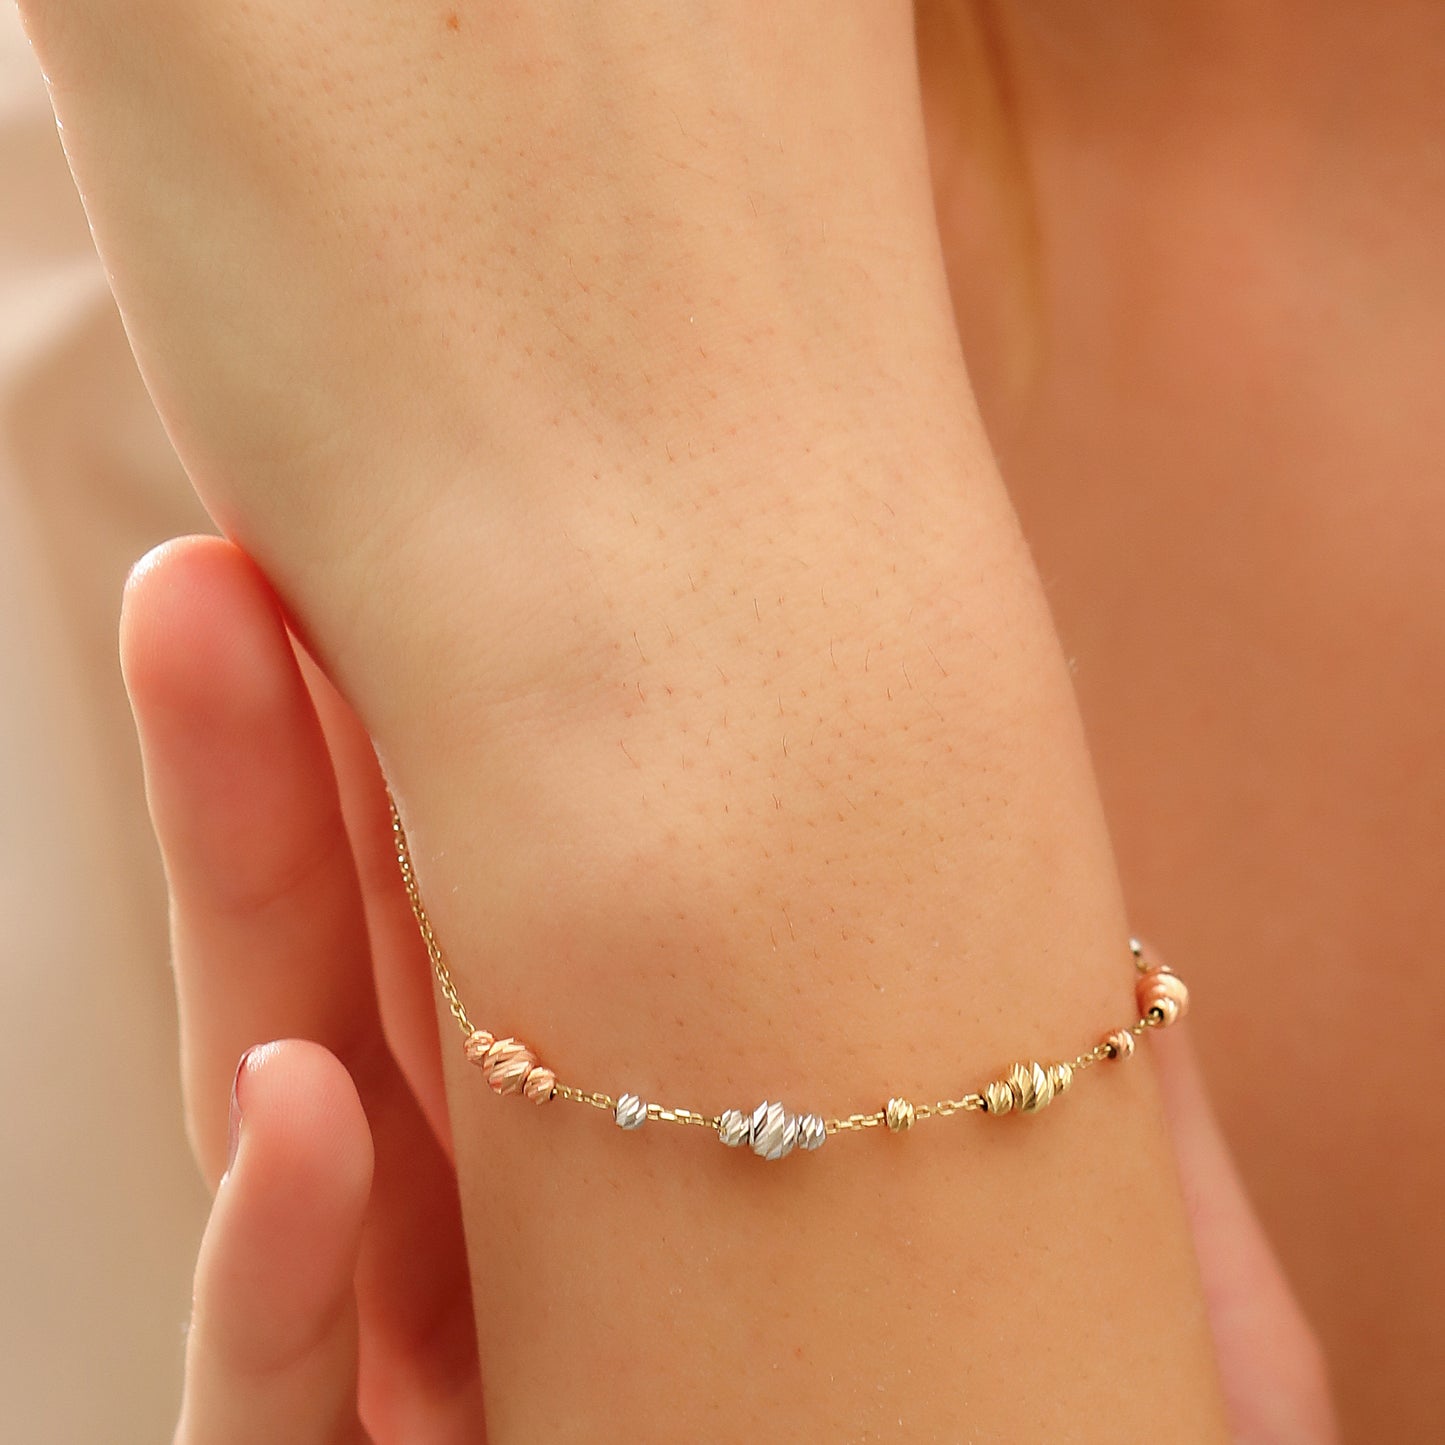 Dorika Armband - Dorika Armband - Date Armband Silber/Gold - Zierliches verstellbares Armband, Geschenk für sie – Geschenk zum Geburtstag